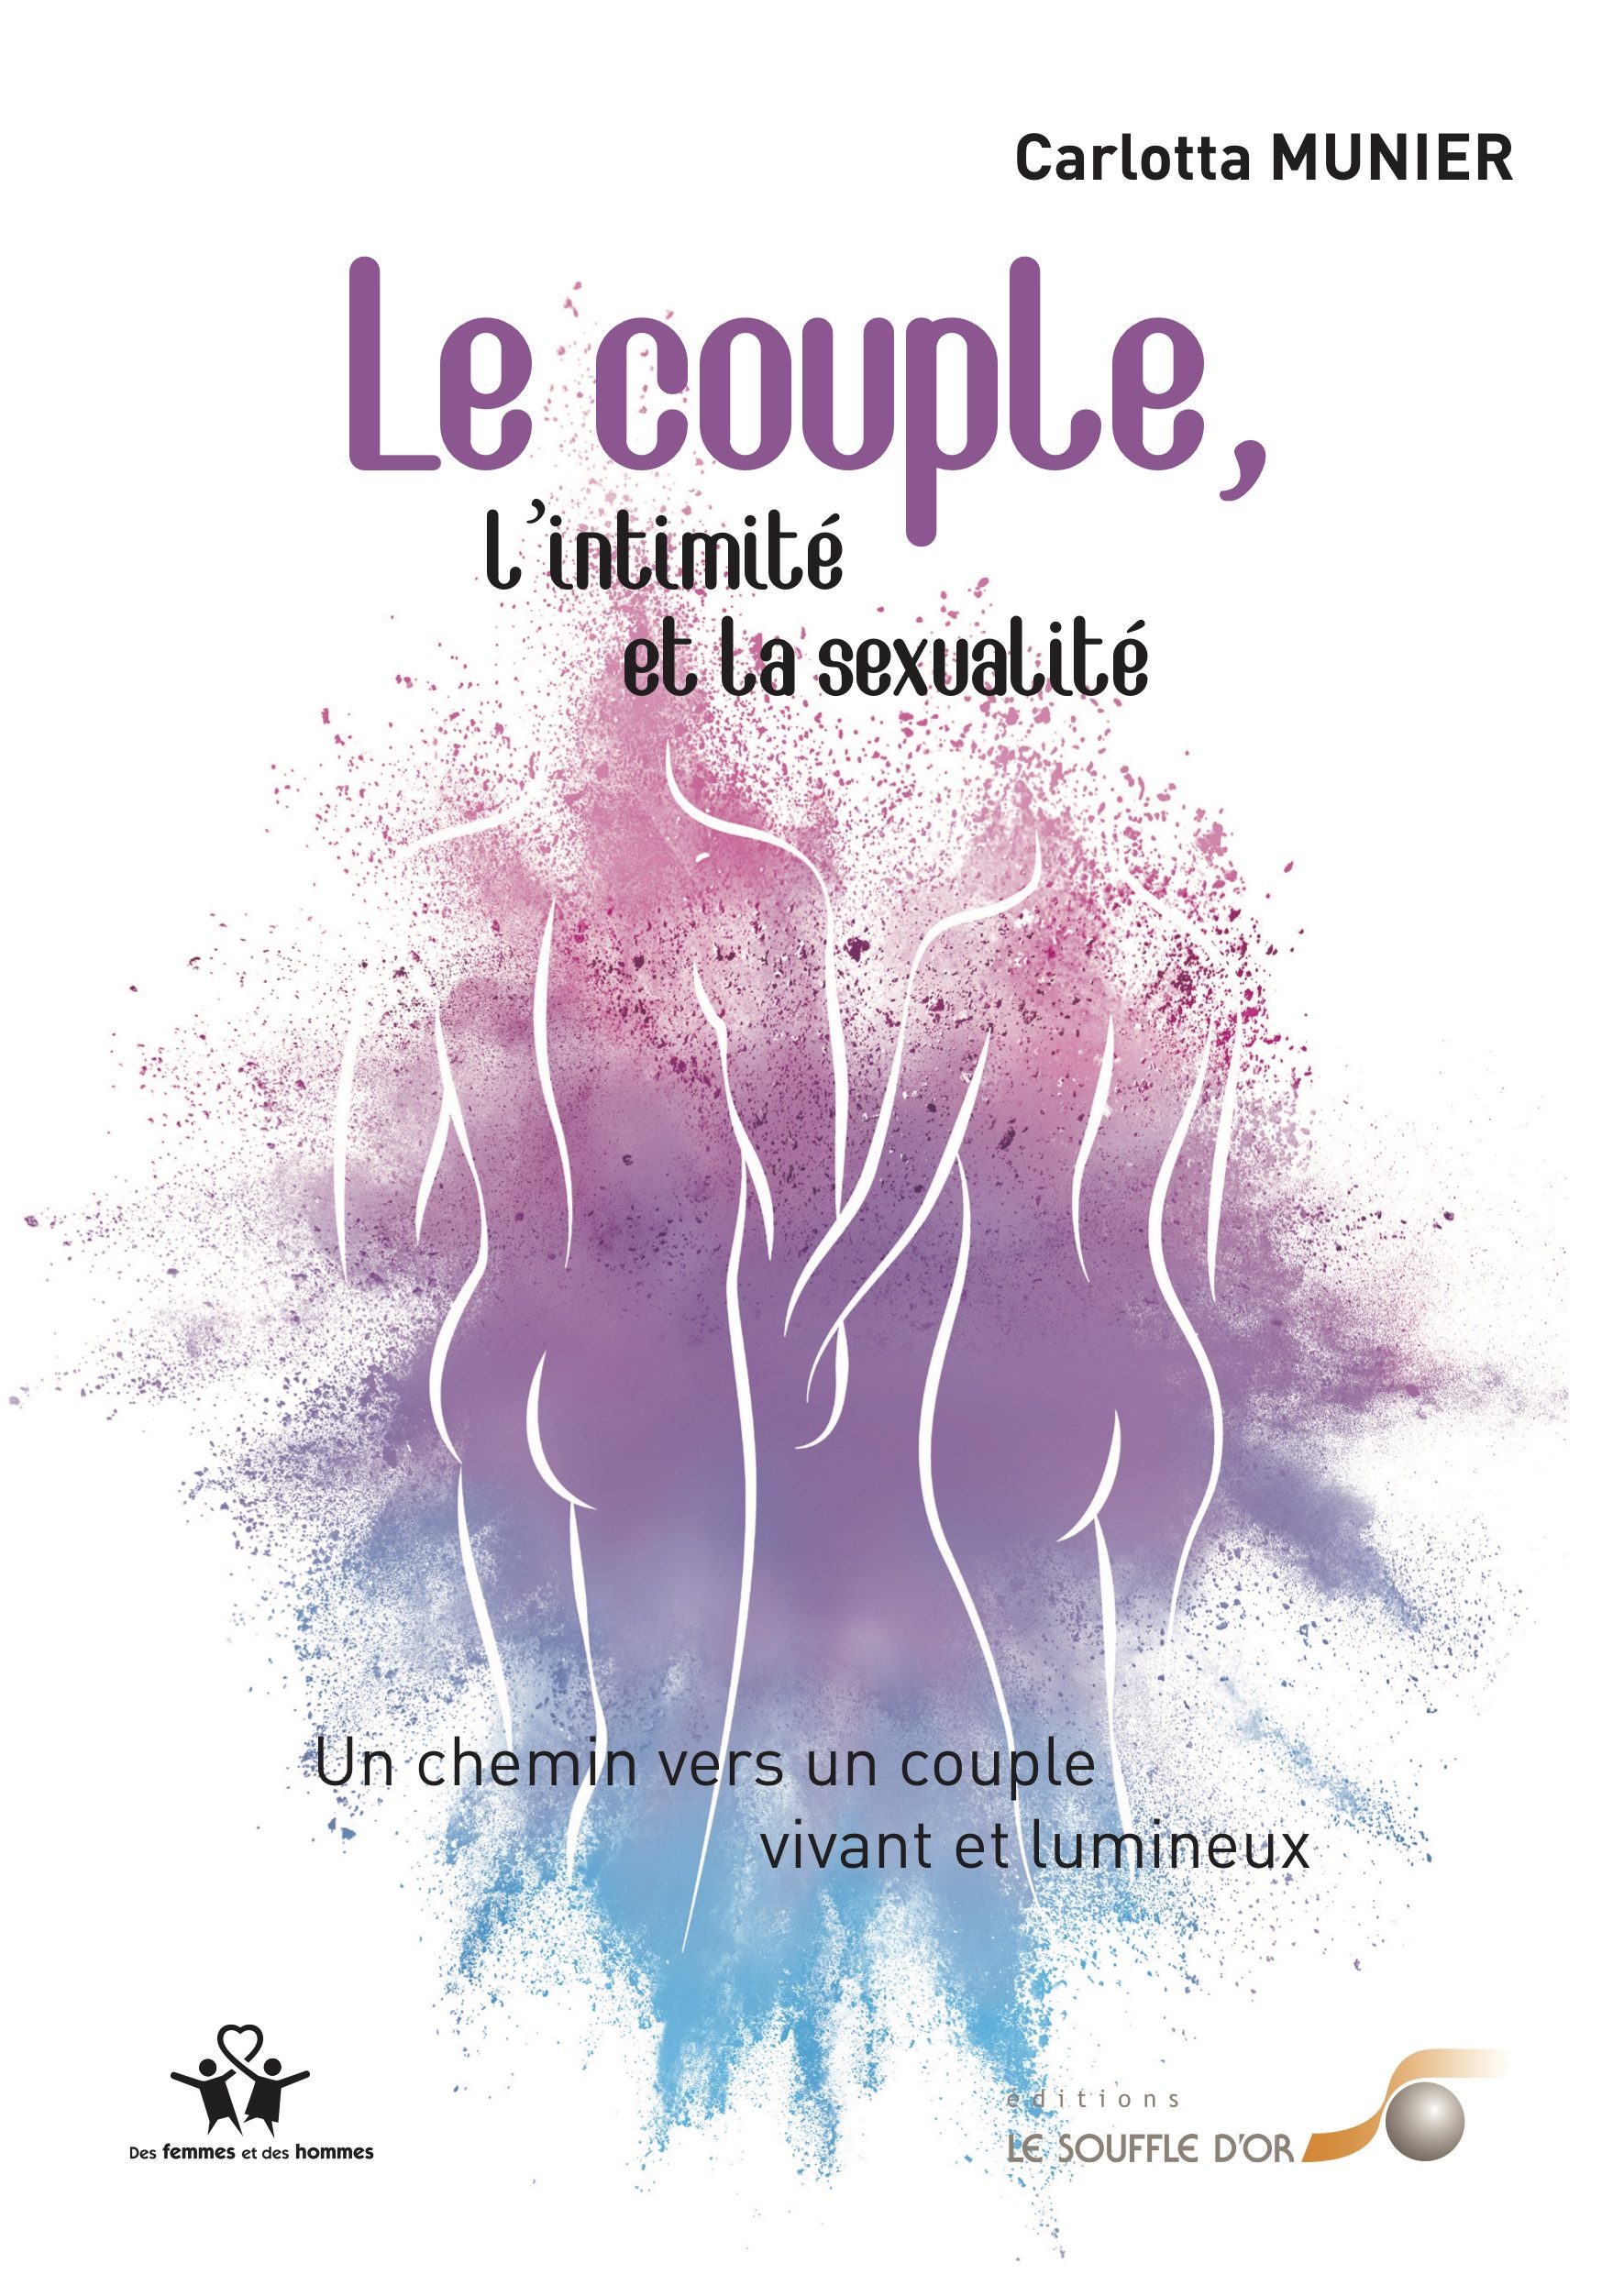 Sexualité Couple Carlotta Munier Aix en Provence